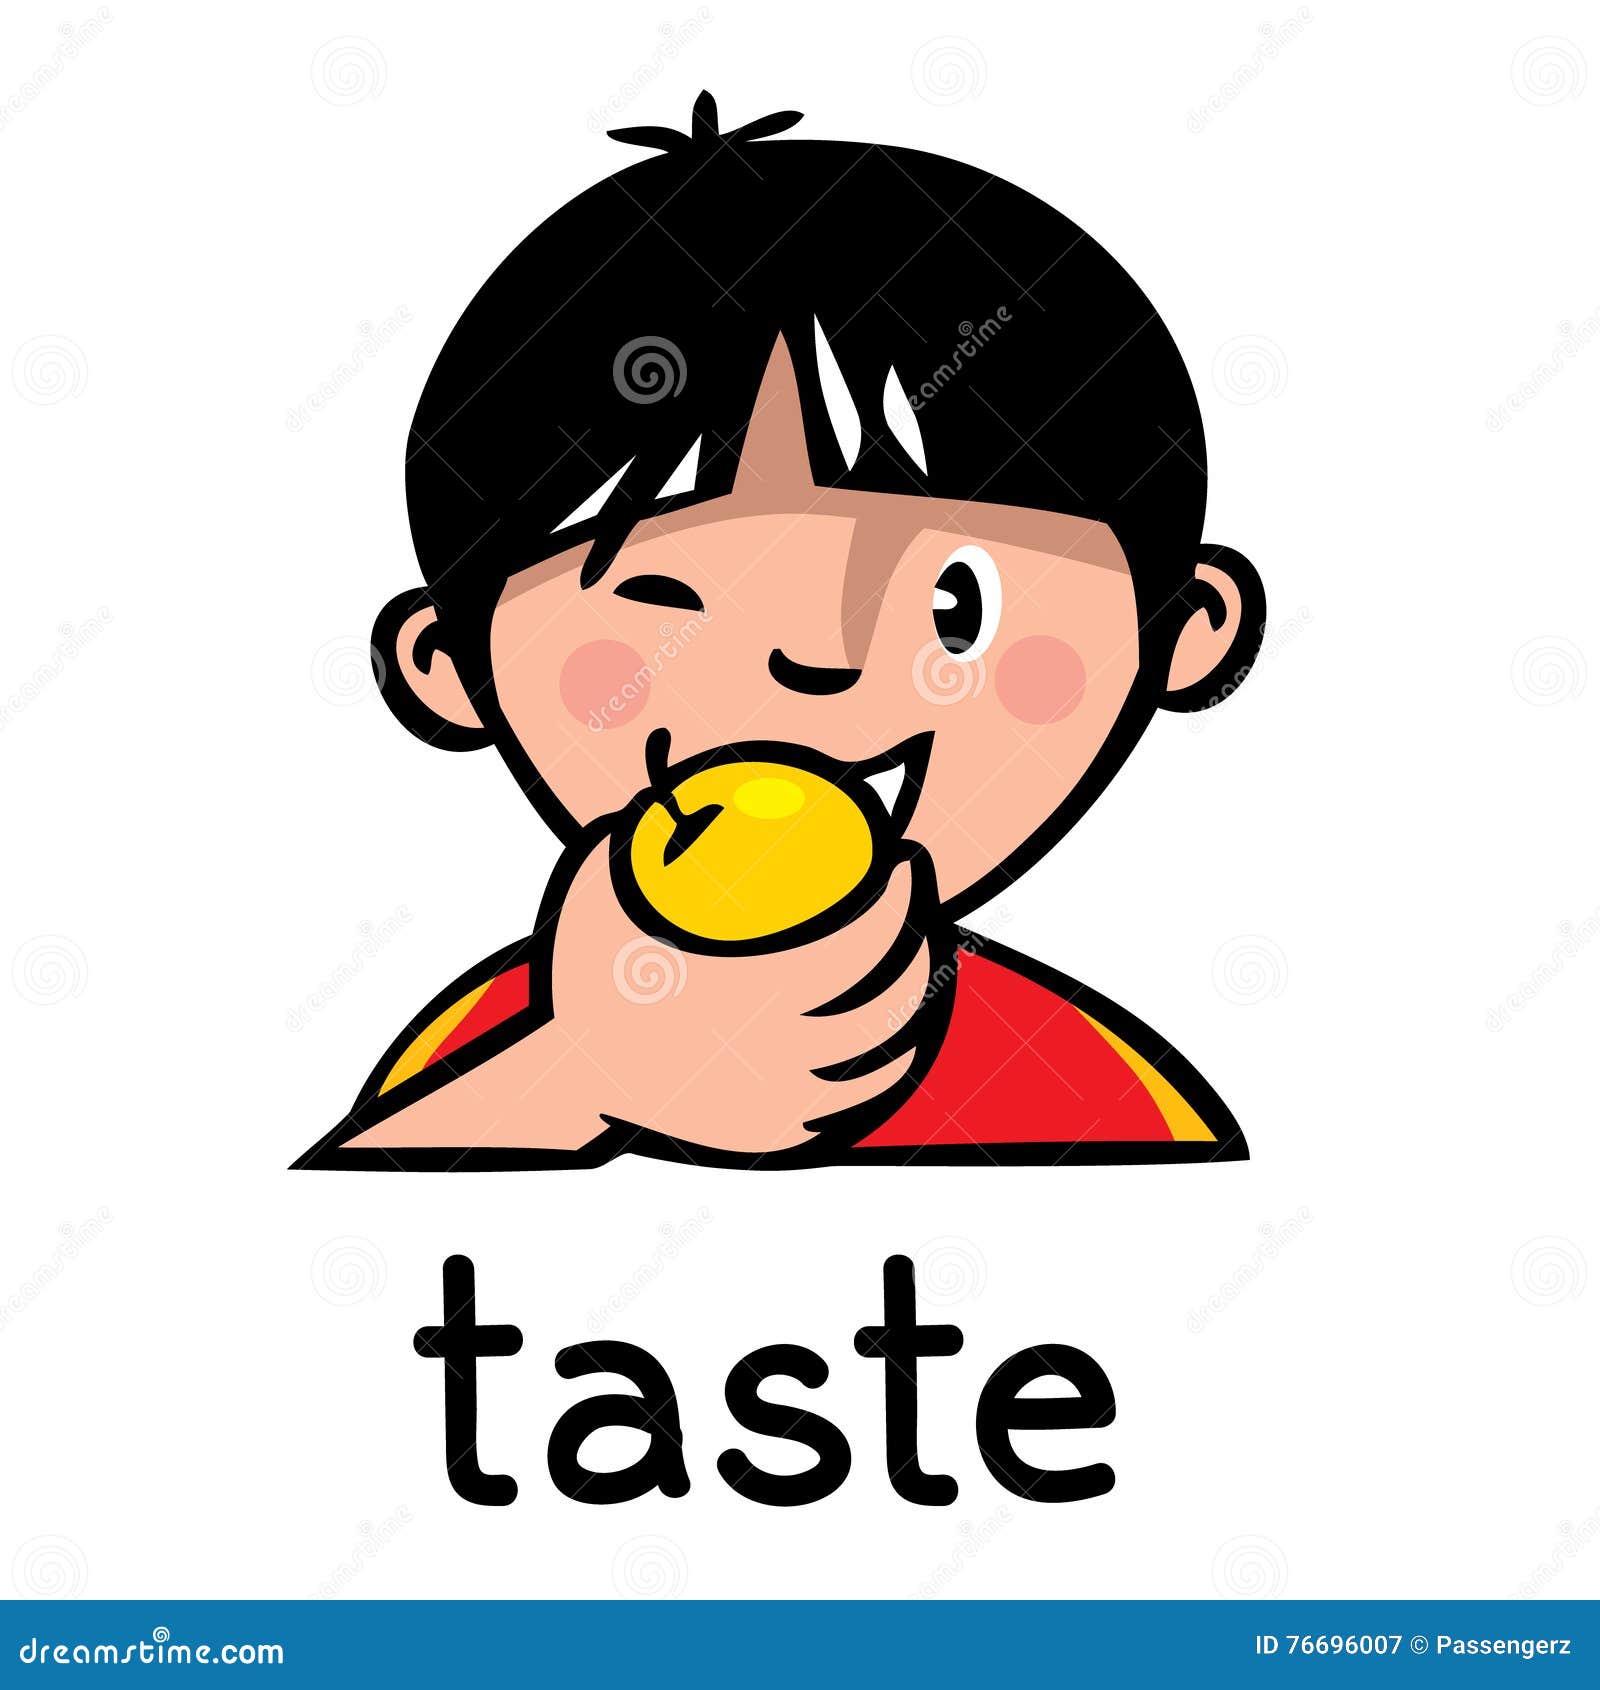 taste sense icon